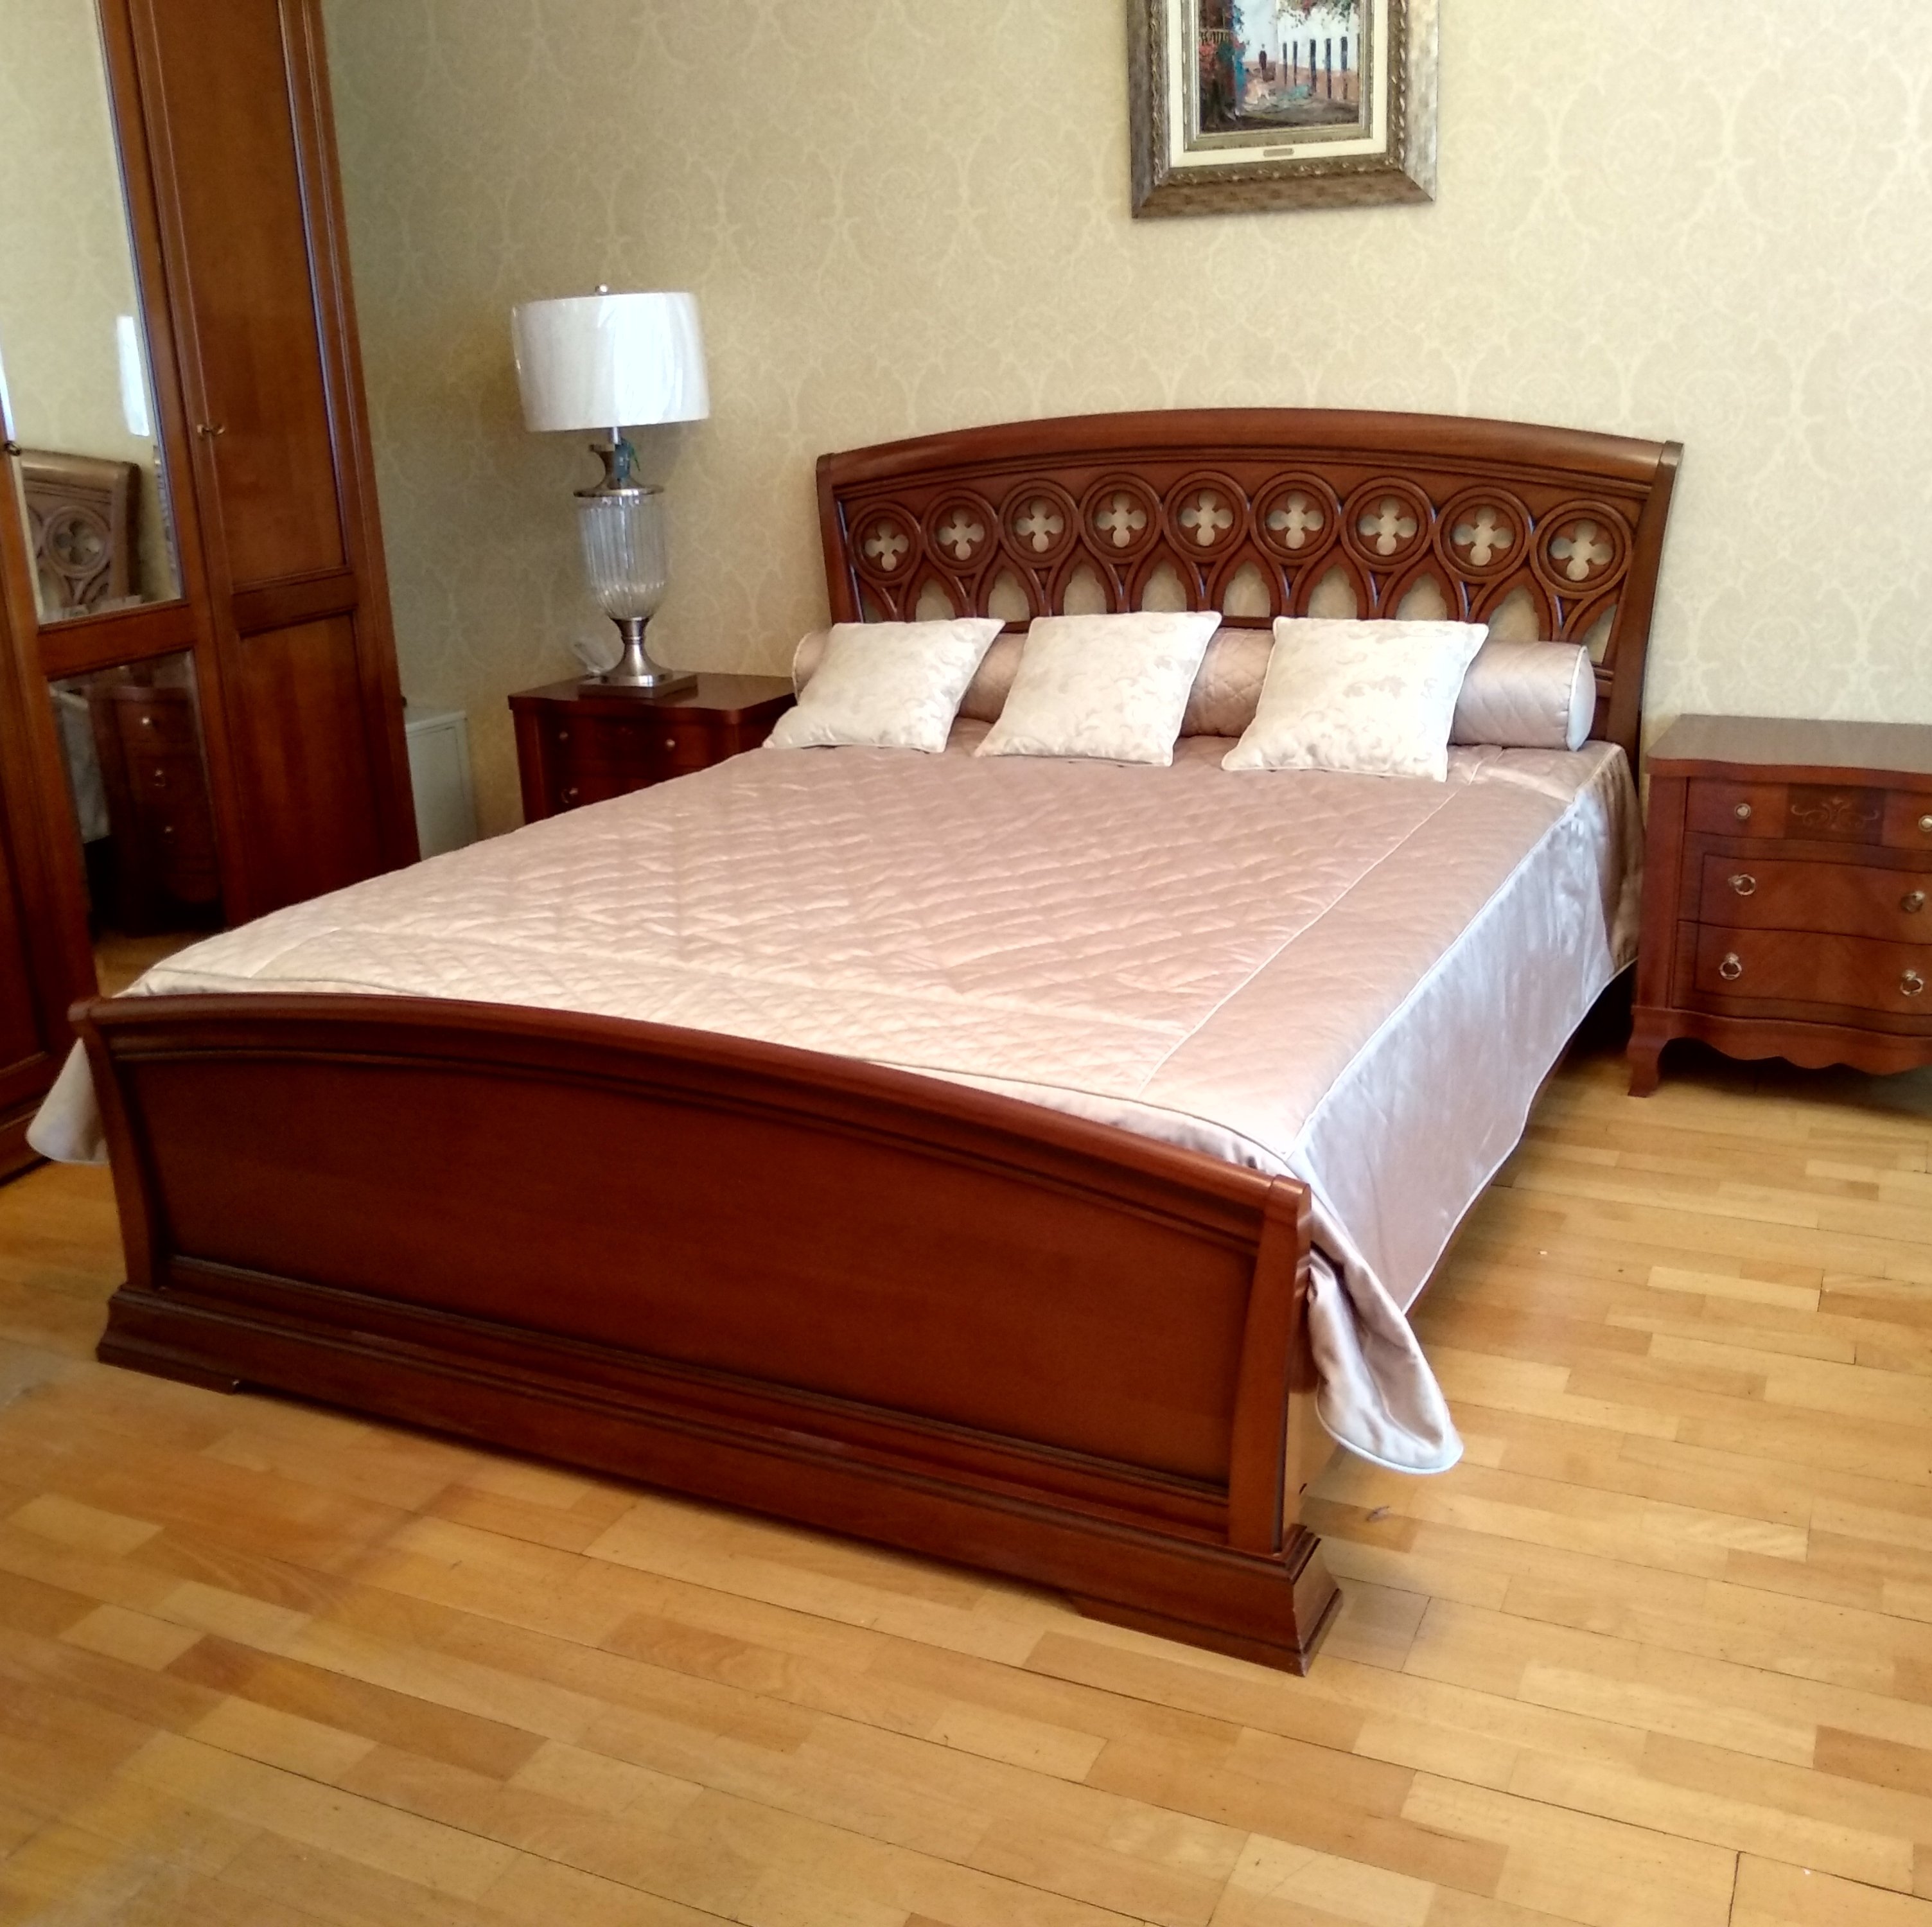 Кровать Prama Palazzo Ducale ciliegio, двуспальная, с резным изголовьем и изножьем, цвет: вишня, 160x200 см (71CI04LT)71CI04LT